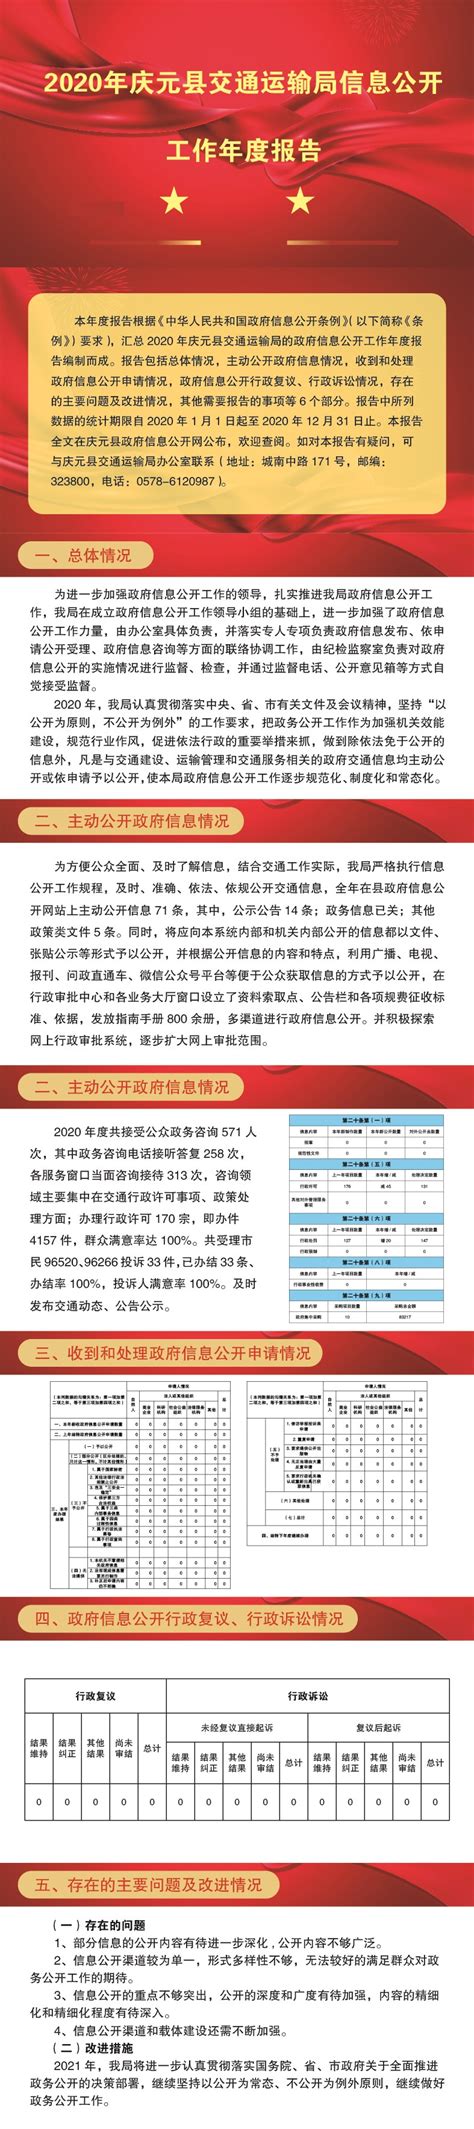 （图解）2020年庆元县交通运输局信息公开工作年度报告